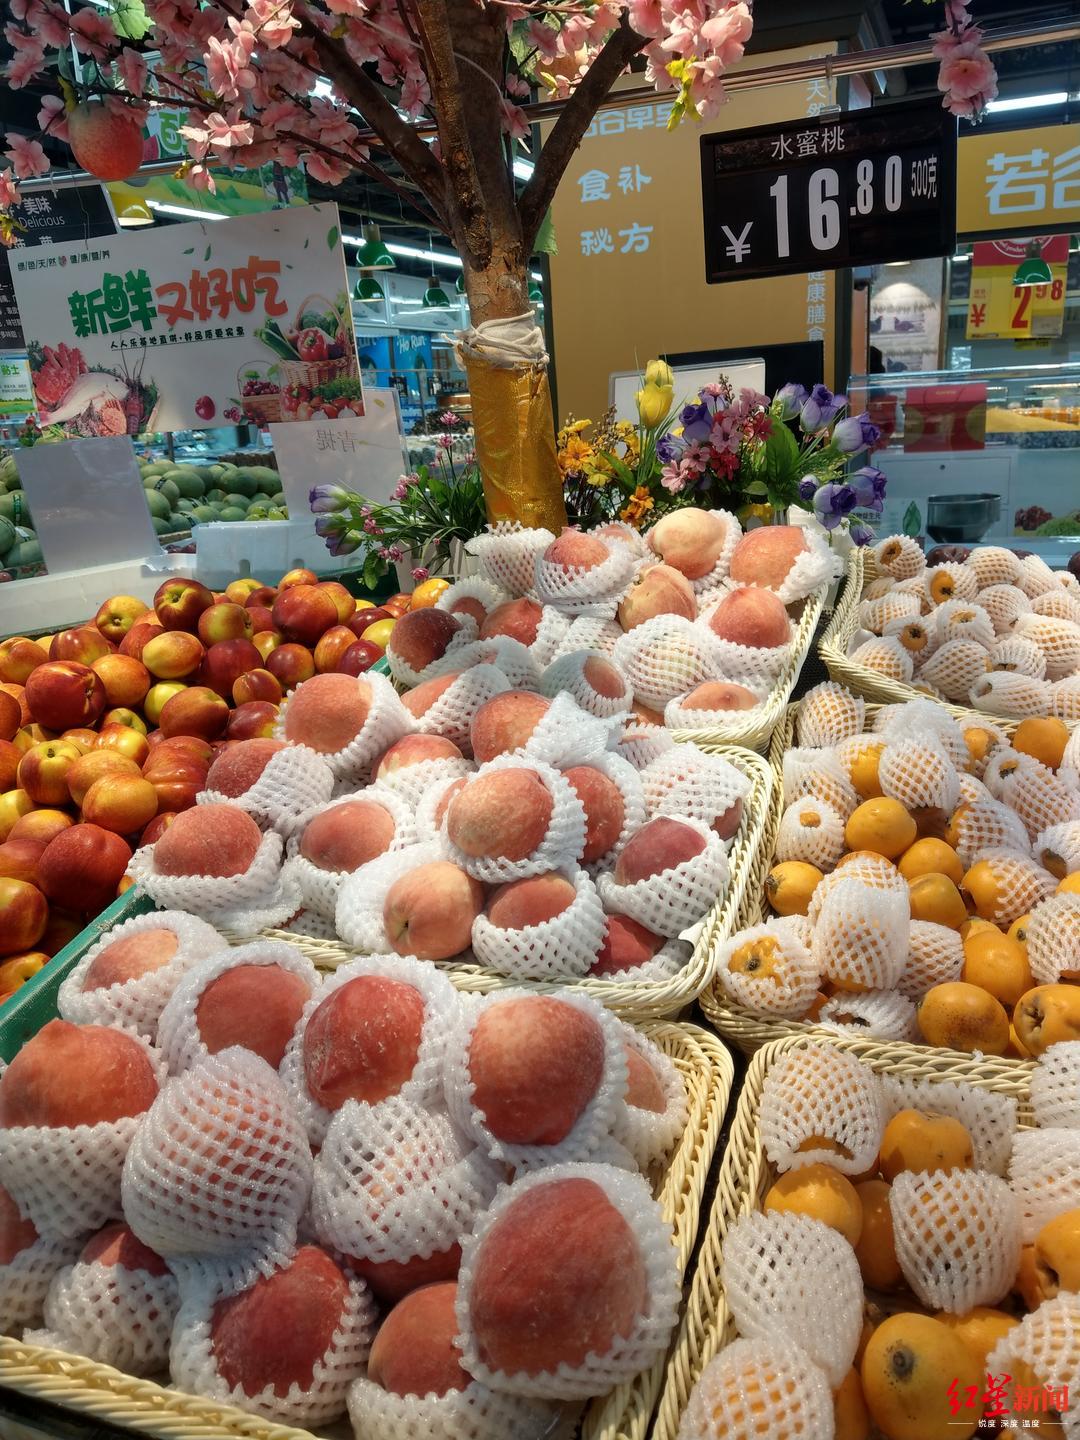  ↑成都一家連鎖生活超市售賣的水果價格